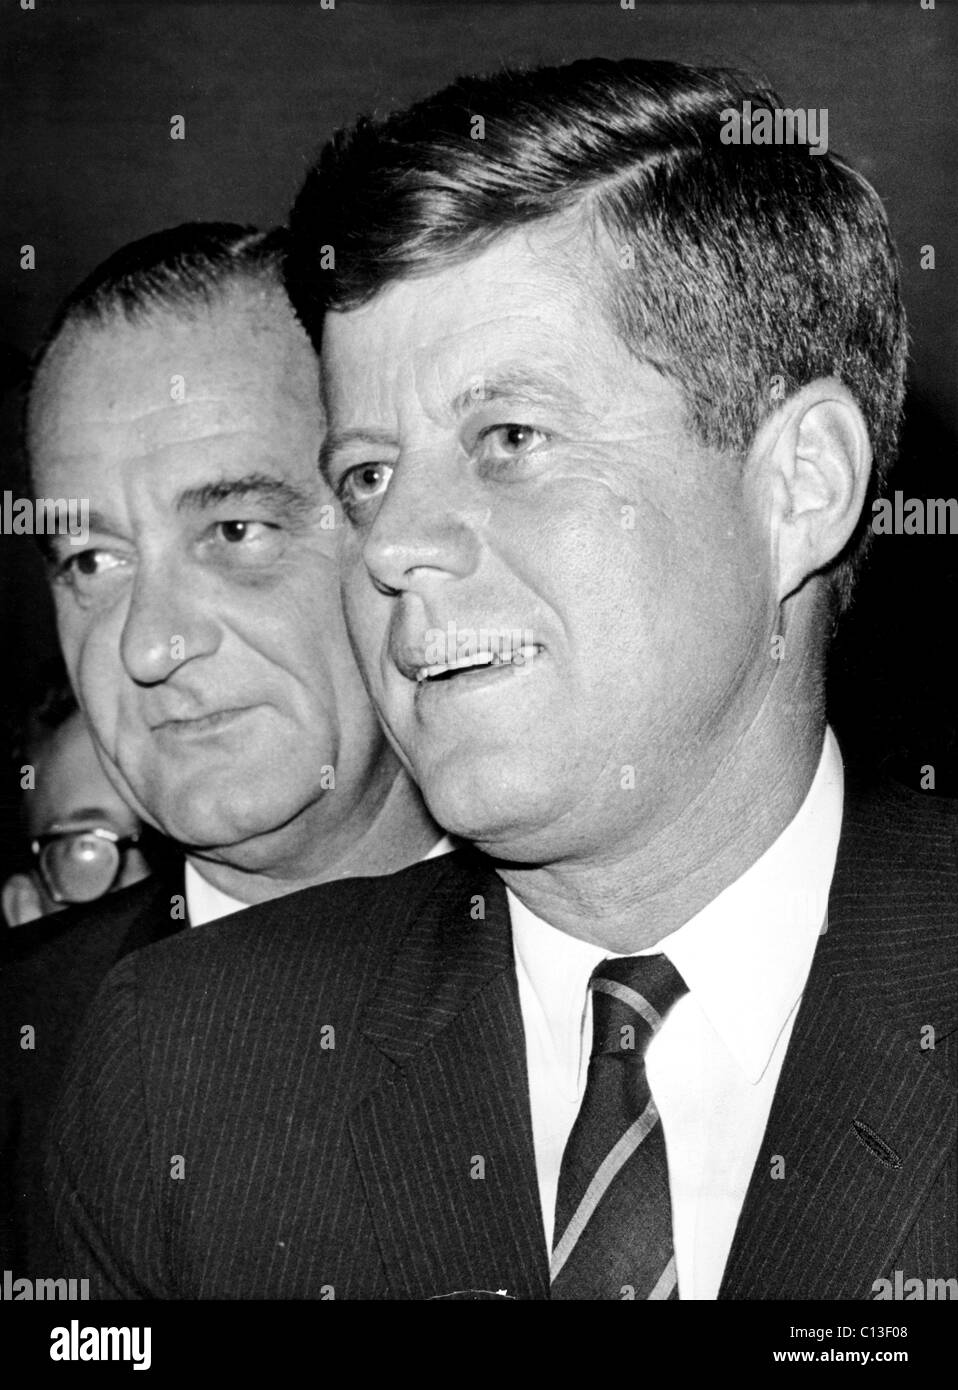 John F. Kennedy et Lyndon B. Johnson, le 6 décembre 1961 Banque D'Images